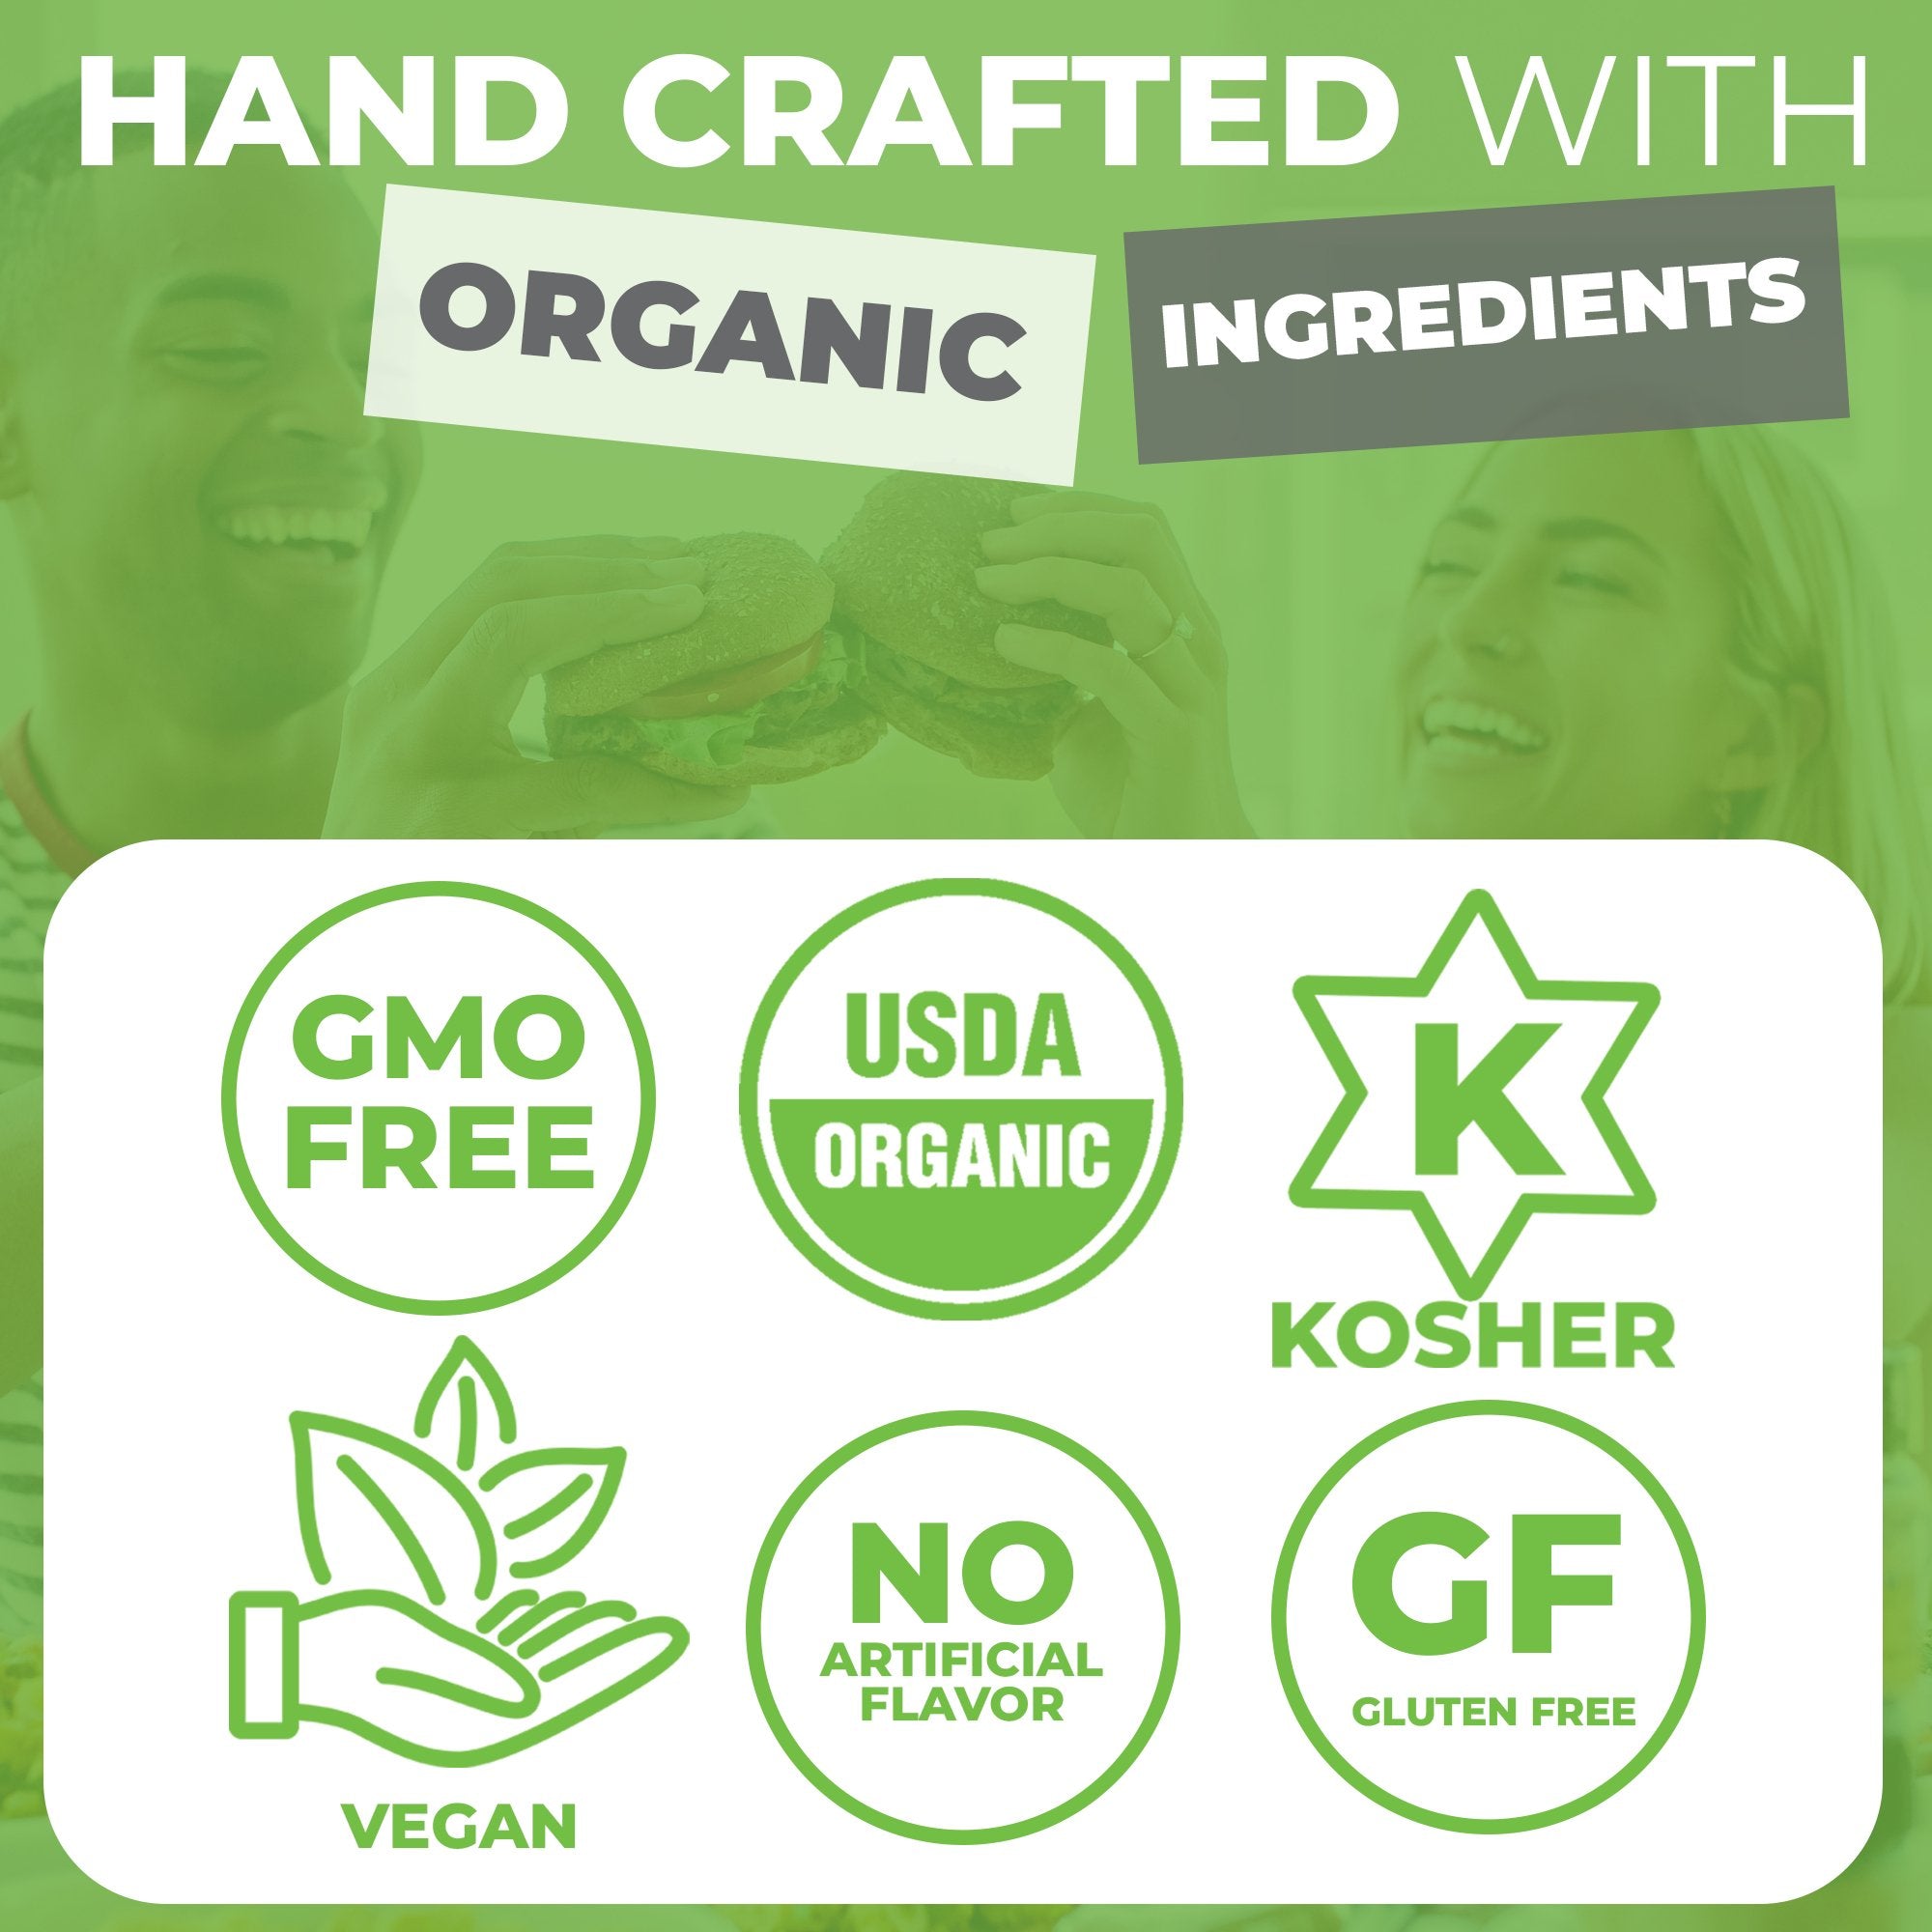 FreshJax Marjoram Leaves are GMO-Free, USDA Organic, Kosher, Vegan and Gluten-Free